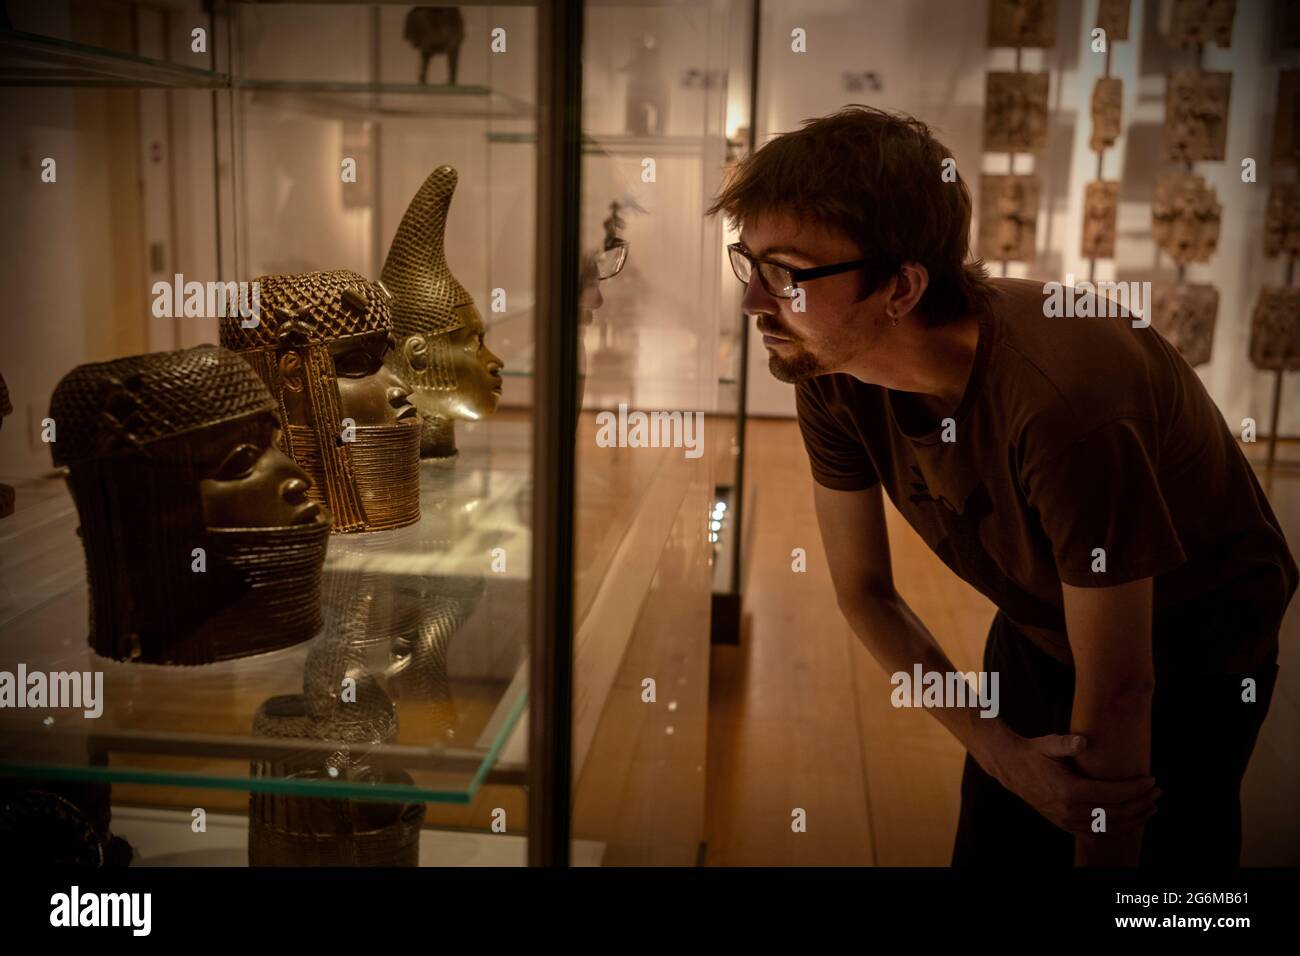 Museo Británico-Los Bronces de Benin Fotografía de Brian Harris 2021-07 Cabezas de Bronce de Benin en el Museo Británico, Londres, Inglaterra. L-R: Cabeza de latón de una O Foto de stock